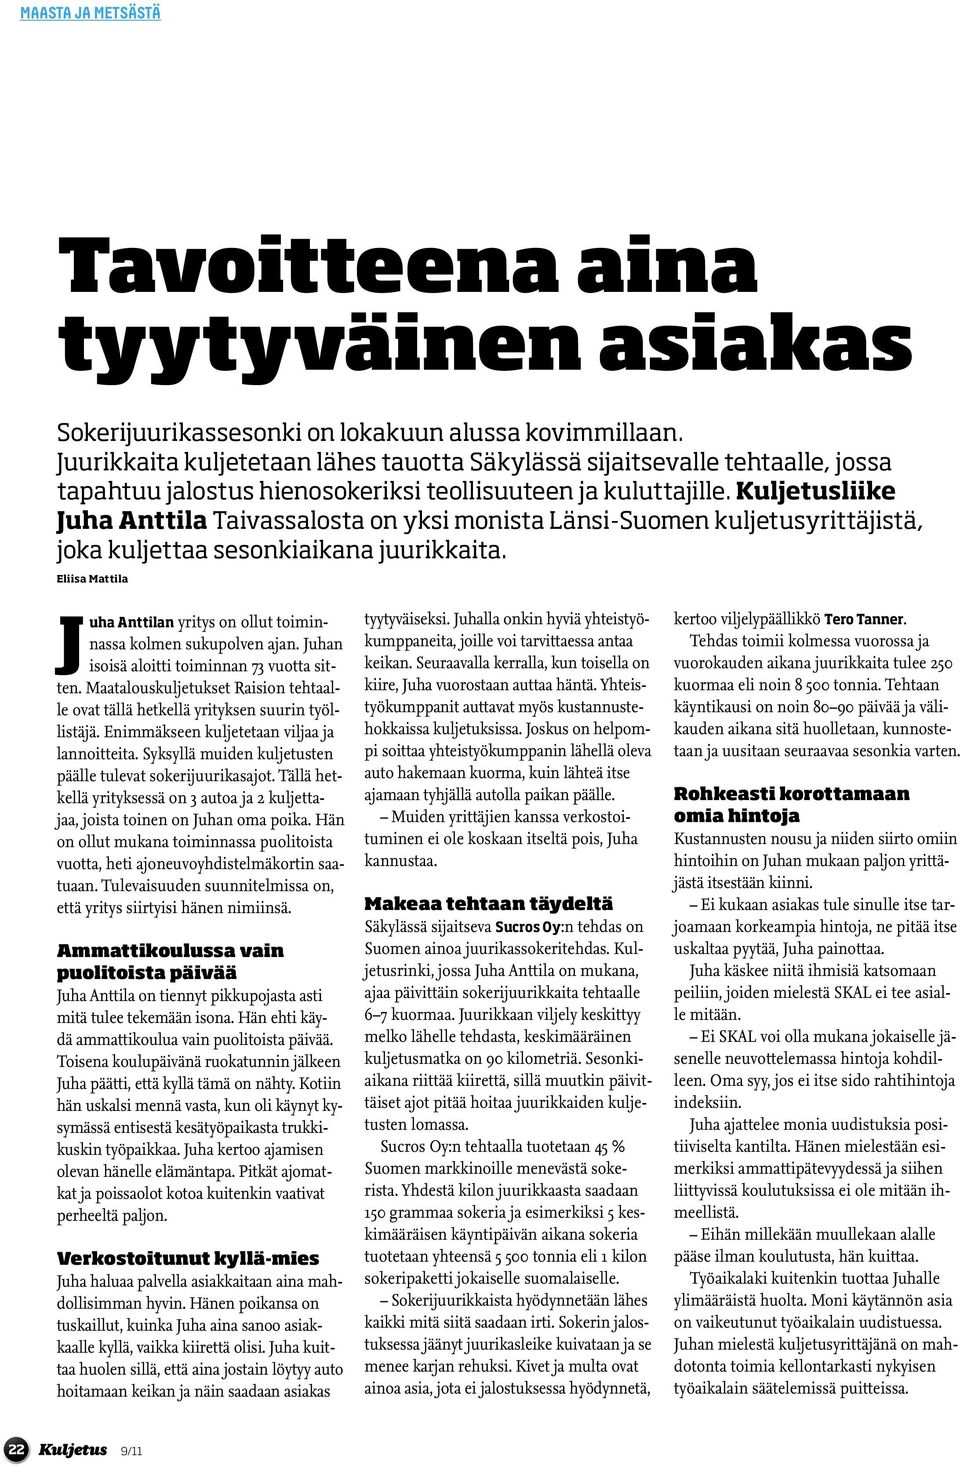 Kuljetusliike Juha Anttila Taivassalosta on yksi monista Länsi-Suomen kuljetusyrittäjistä, joka kuljettaa sesonkiaikana juurikkaita.